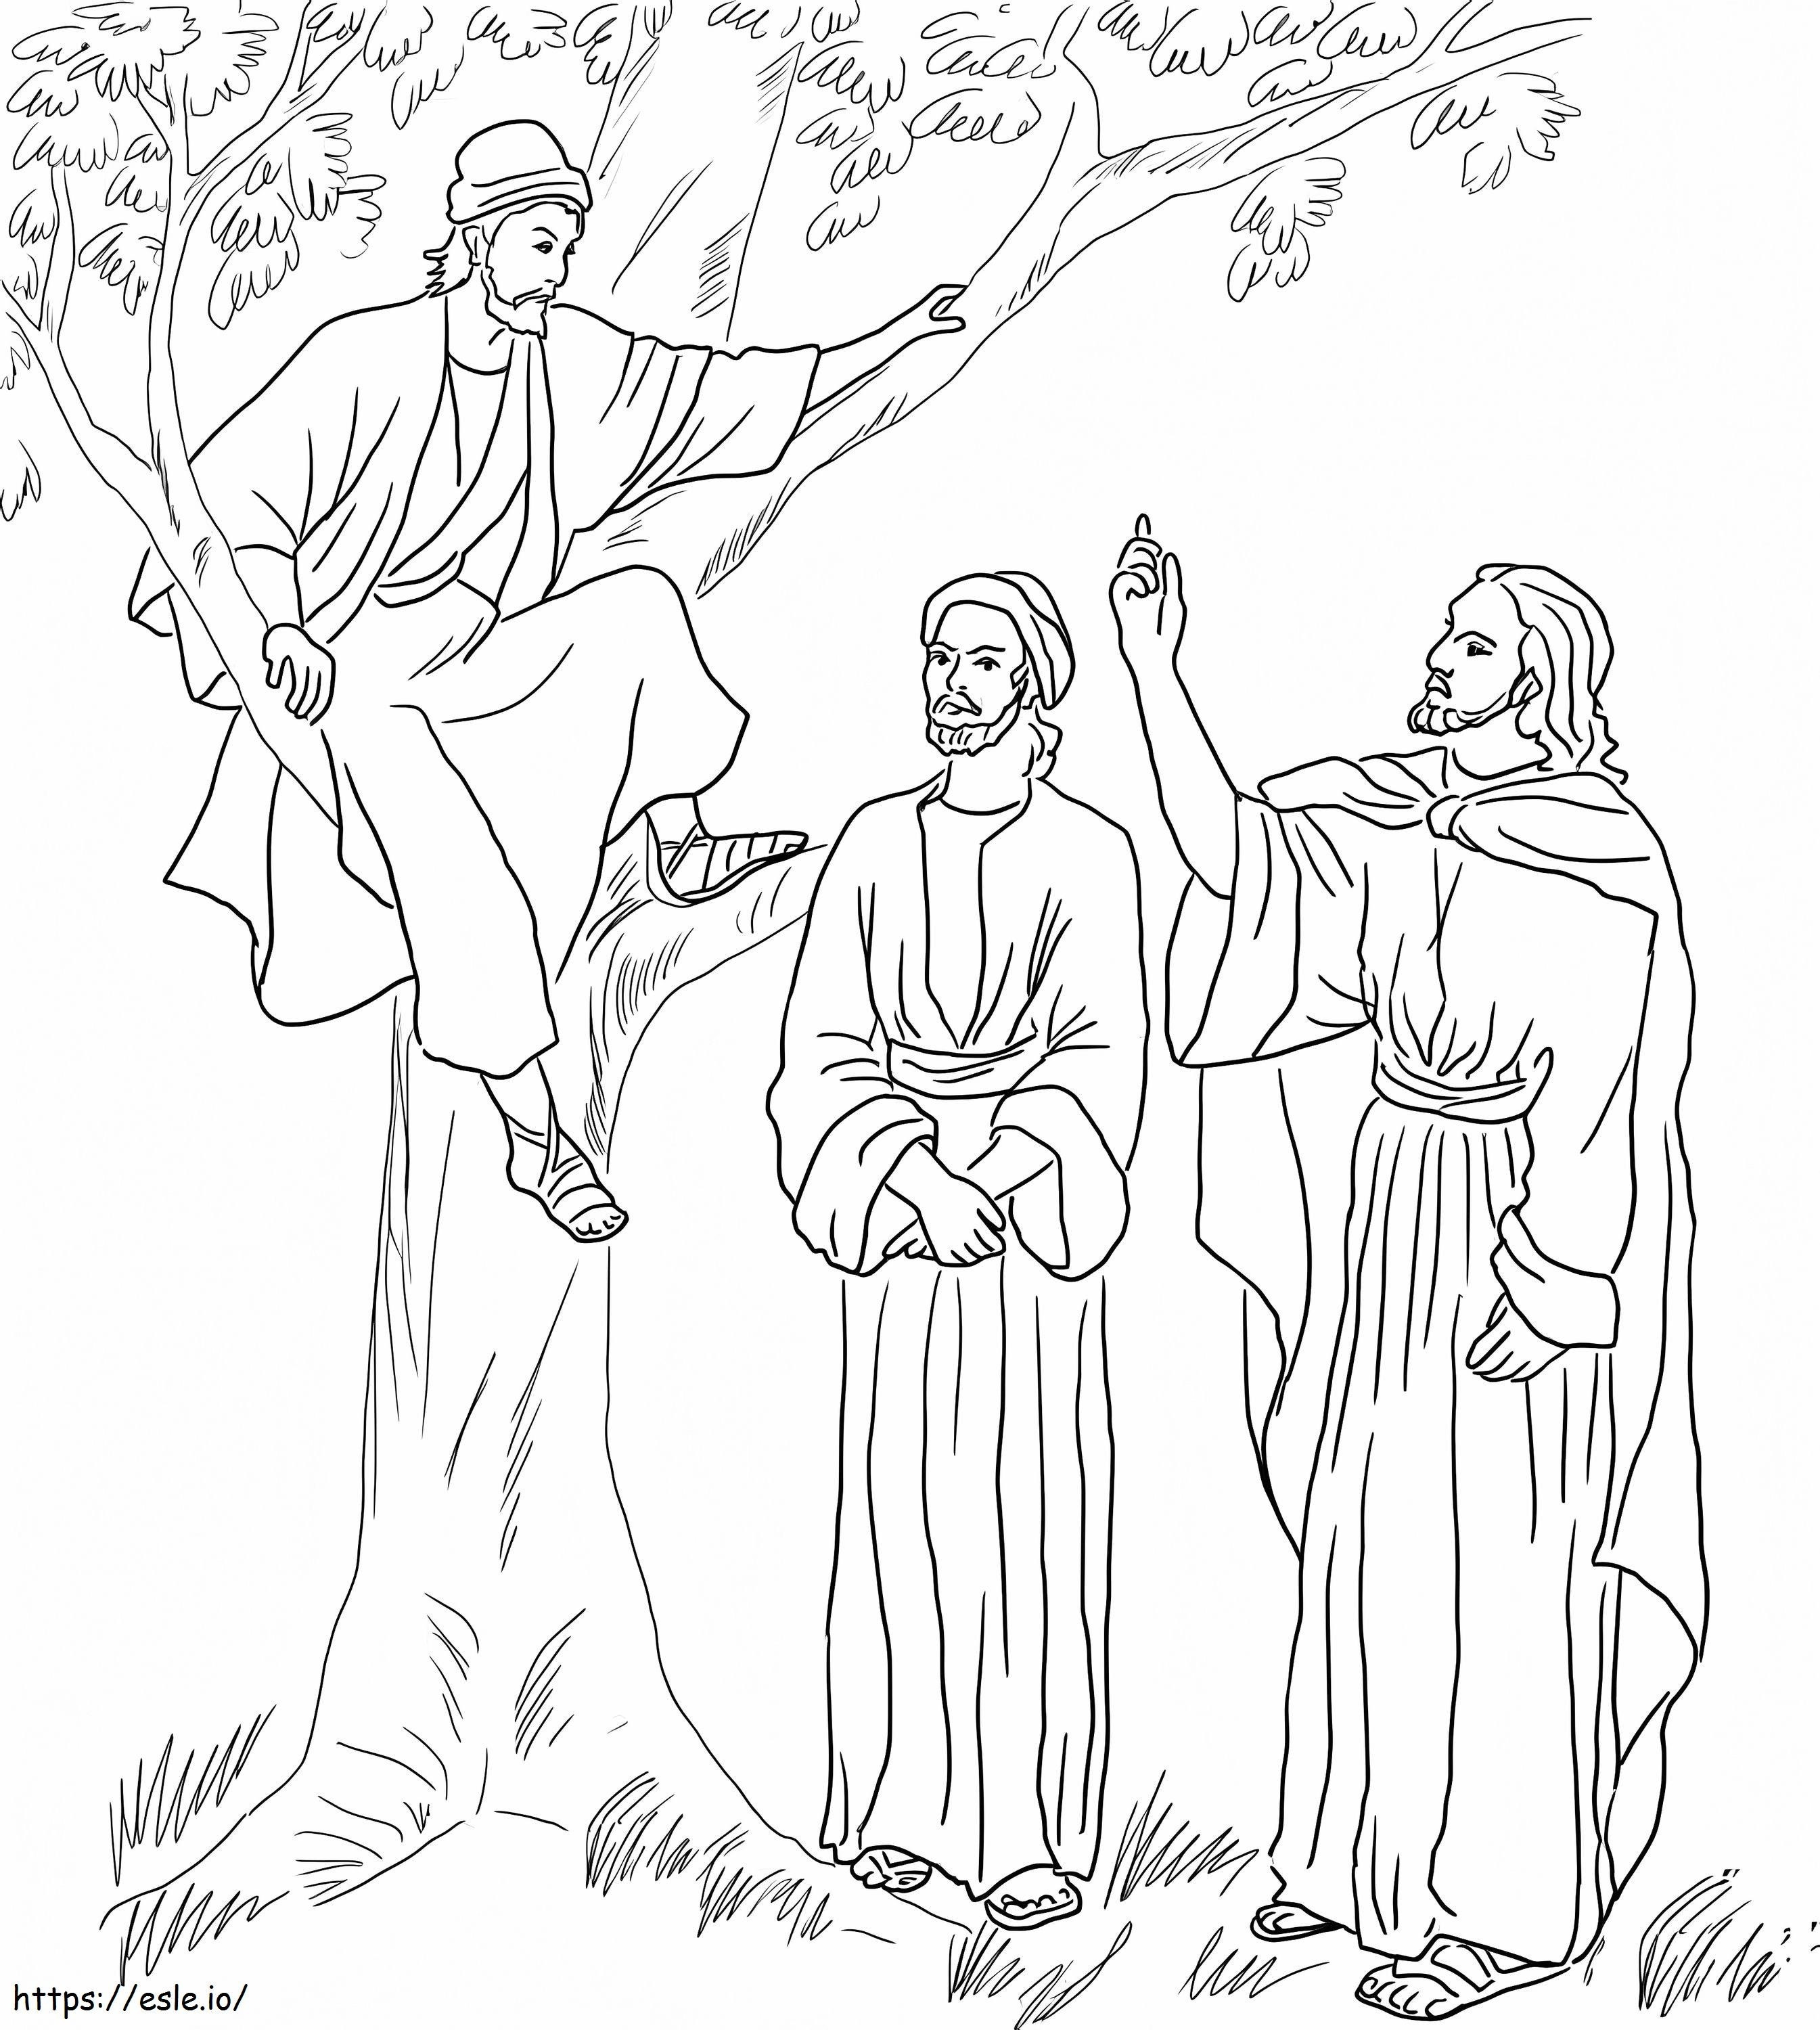 Jesus Meets Zacchaeus coloring page